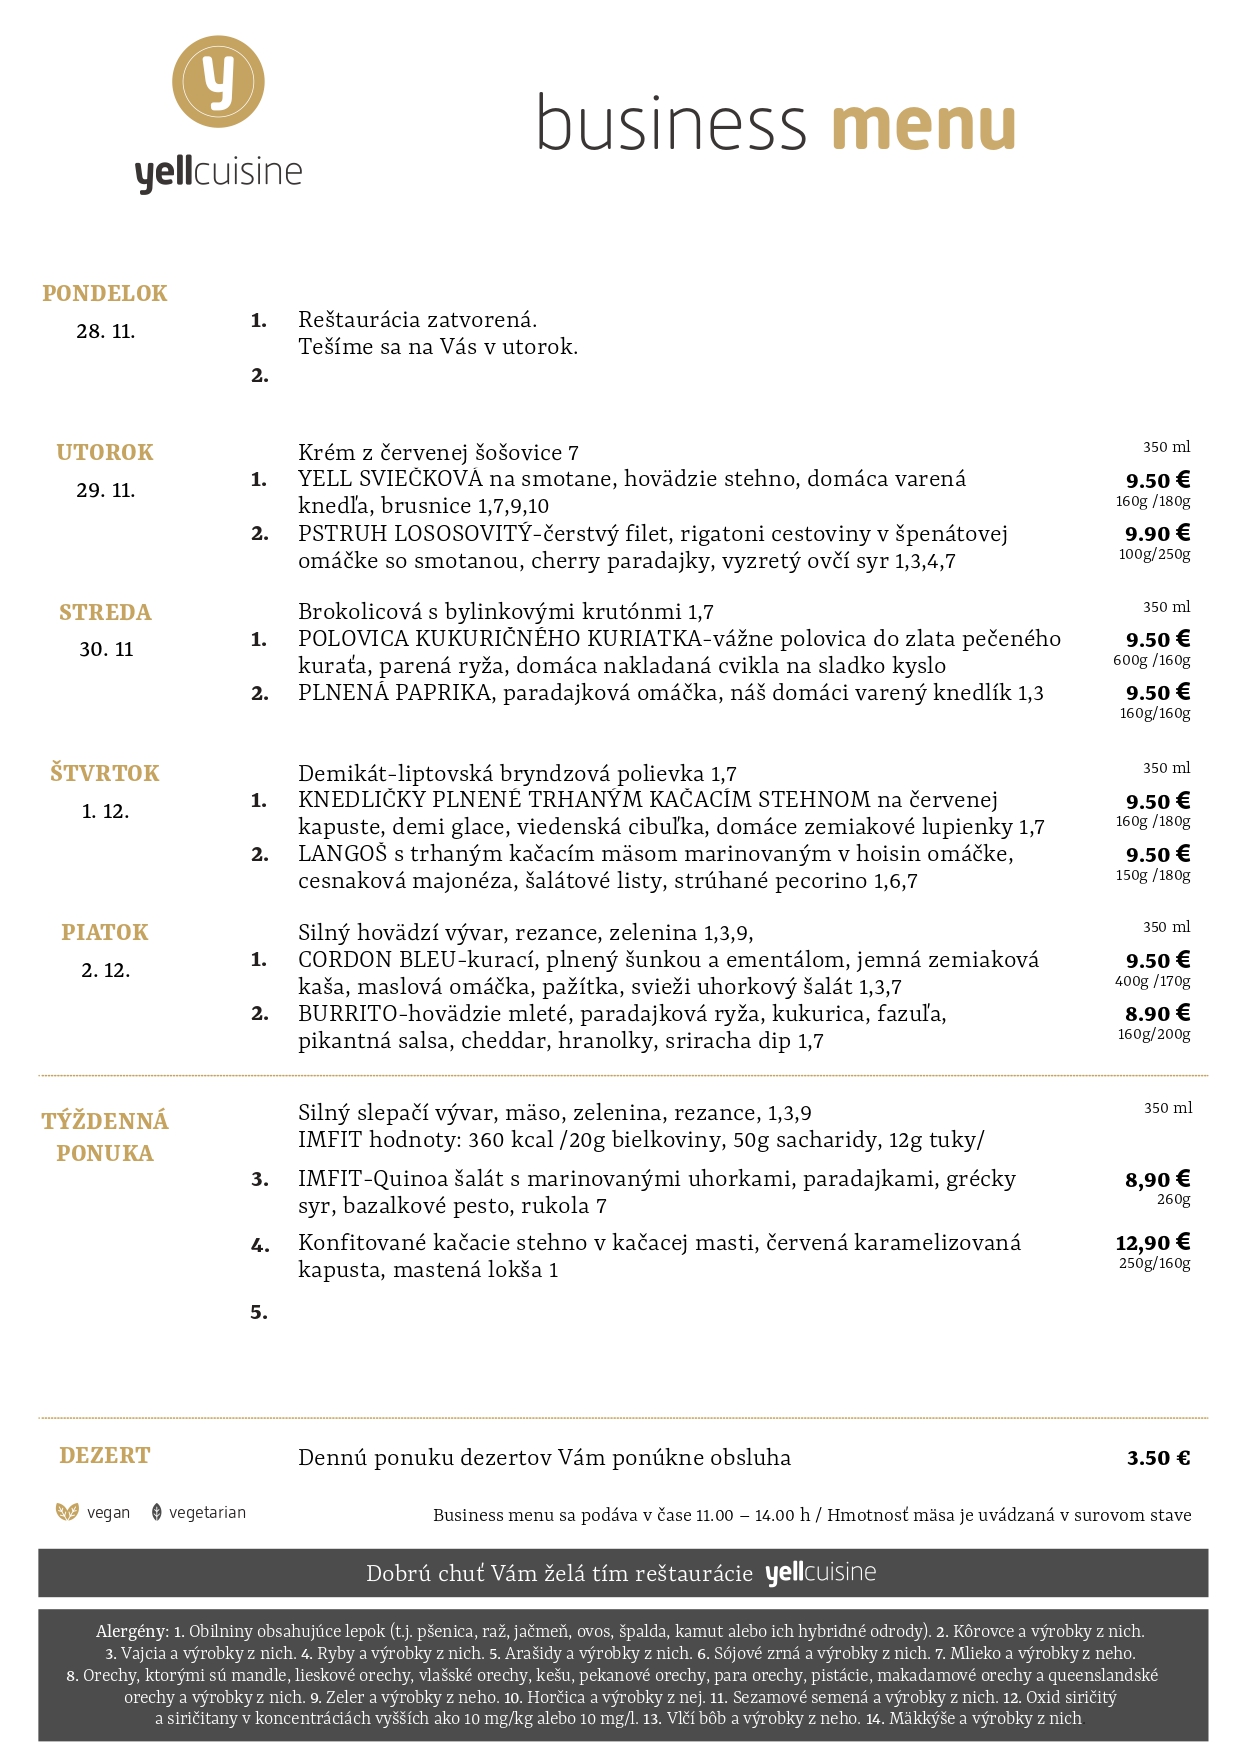 business menu ružomberok